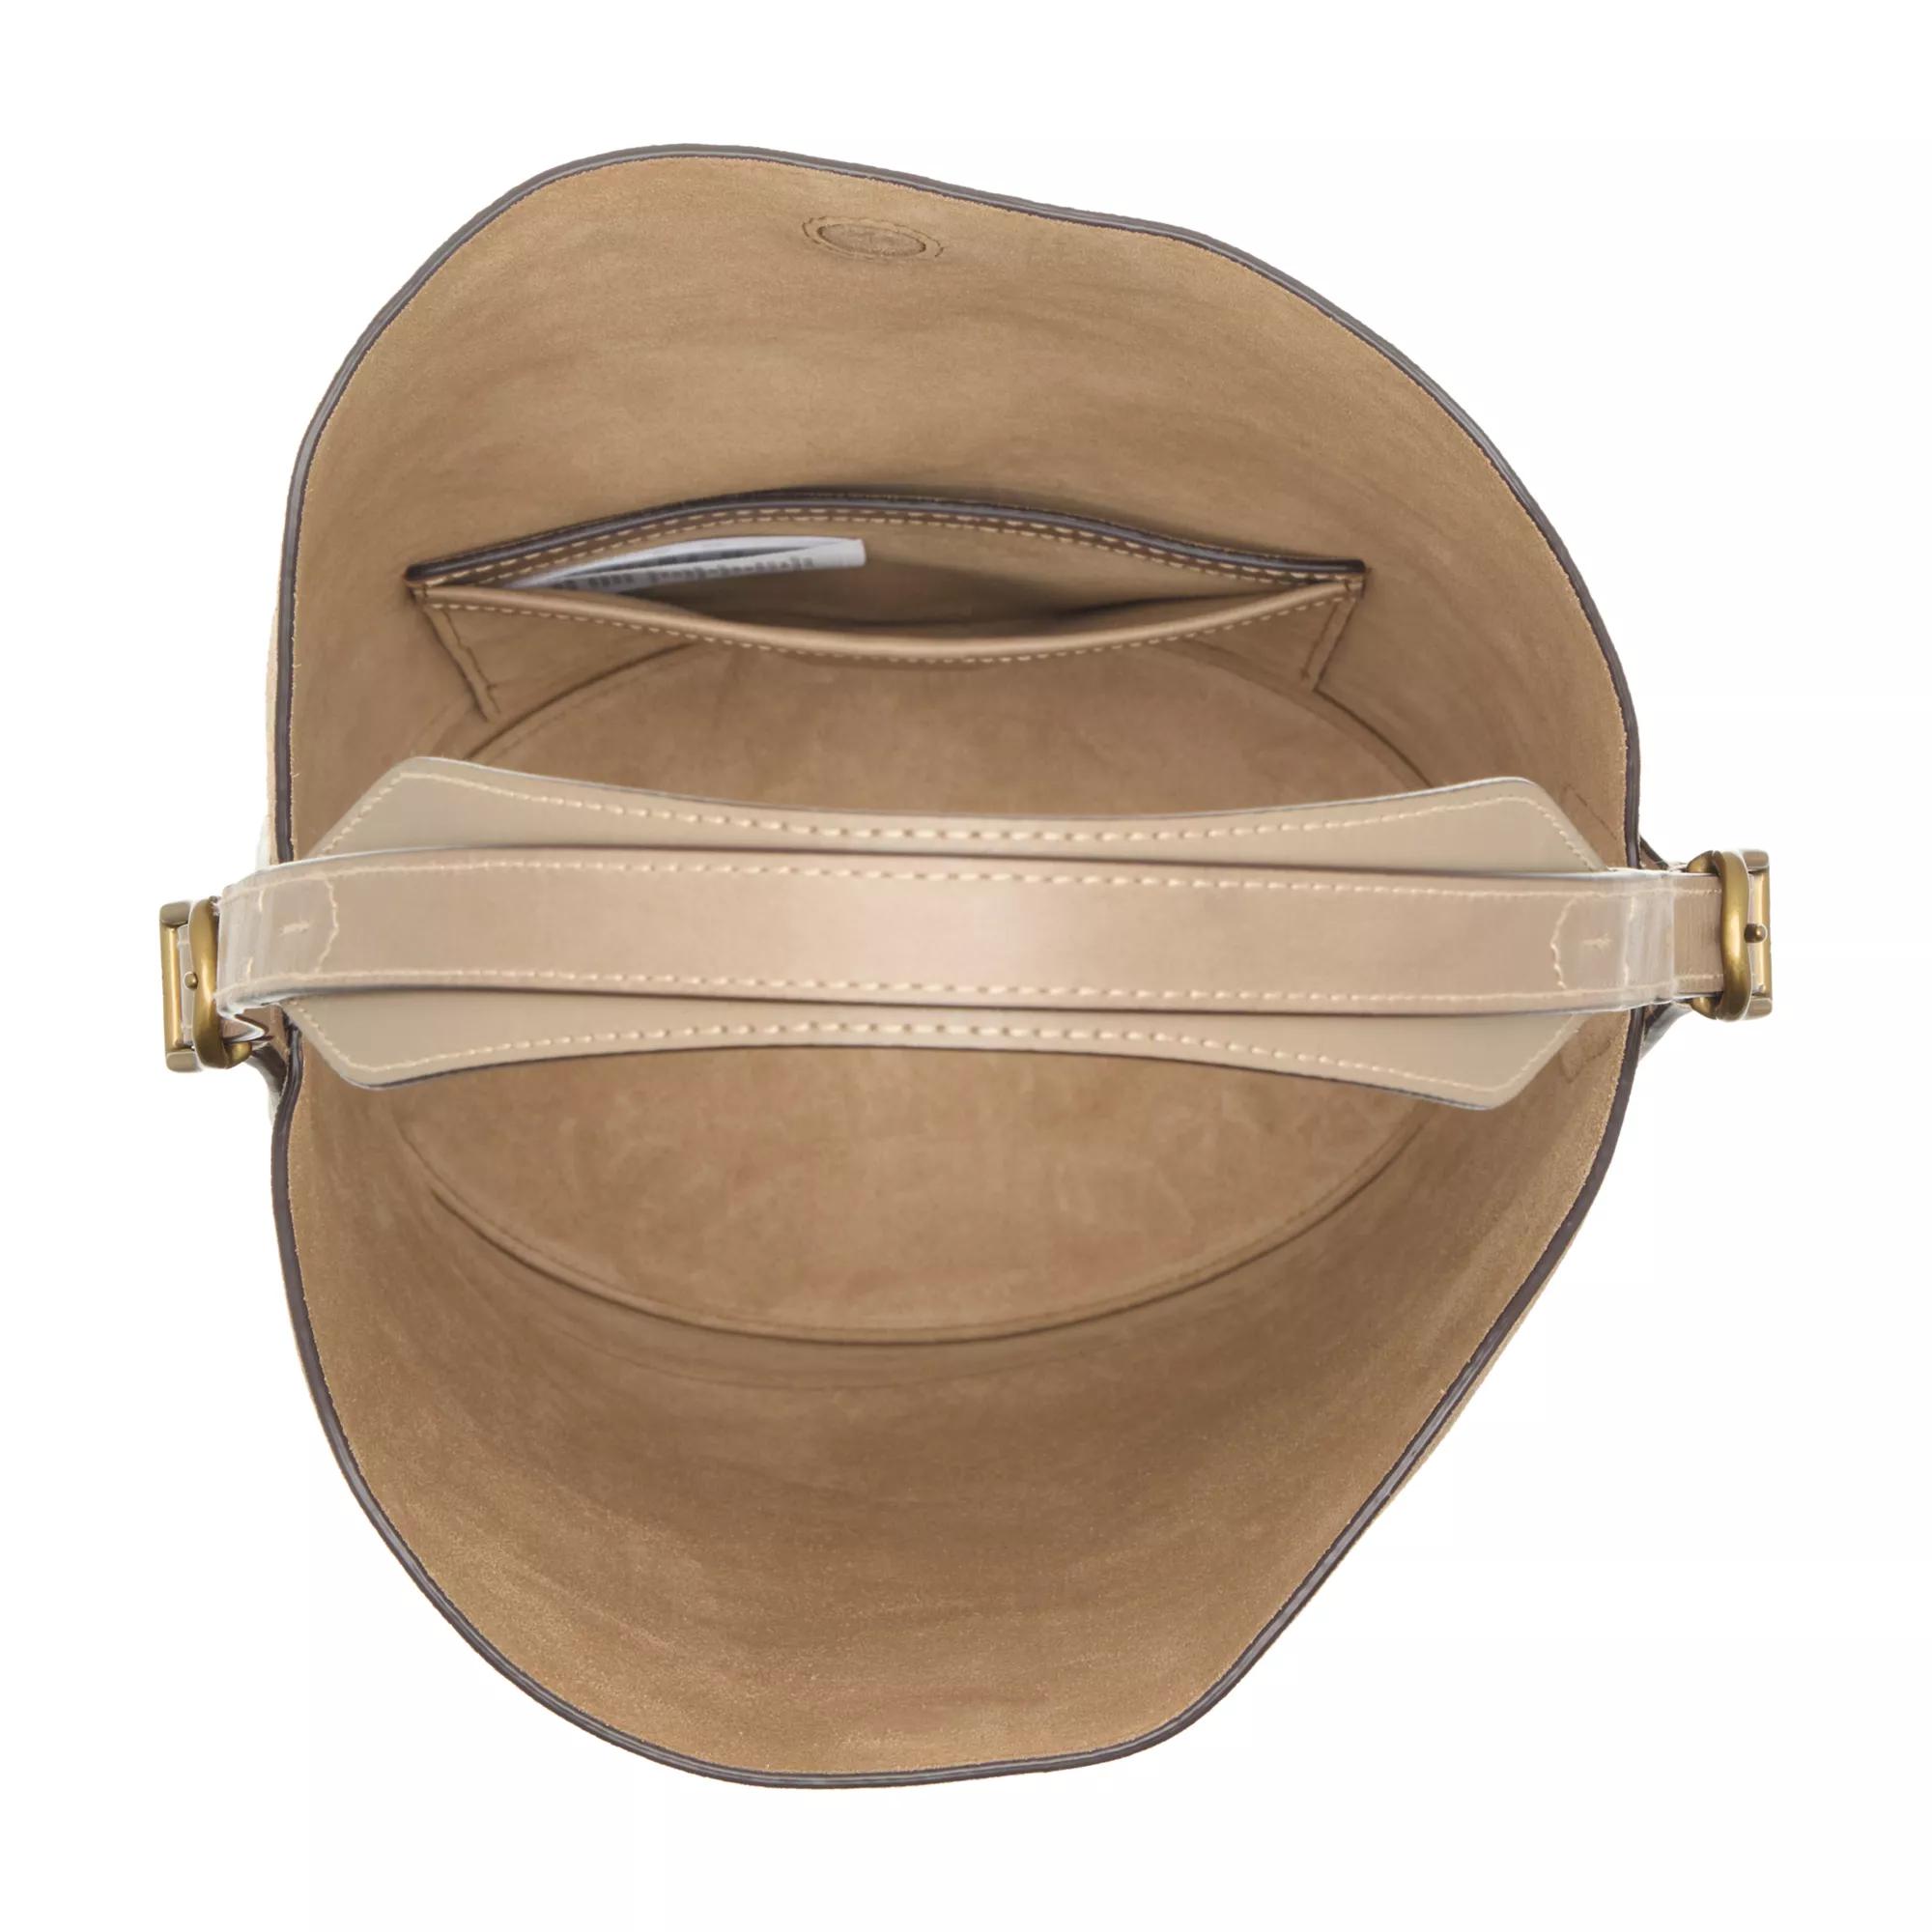 Polo Ralph Lauren Bucket bags Bucket Bag Medium in beige